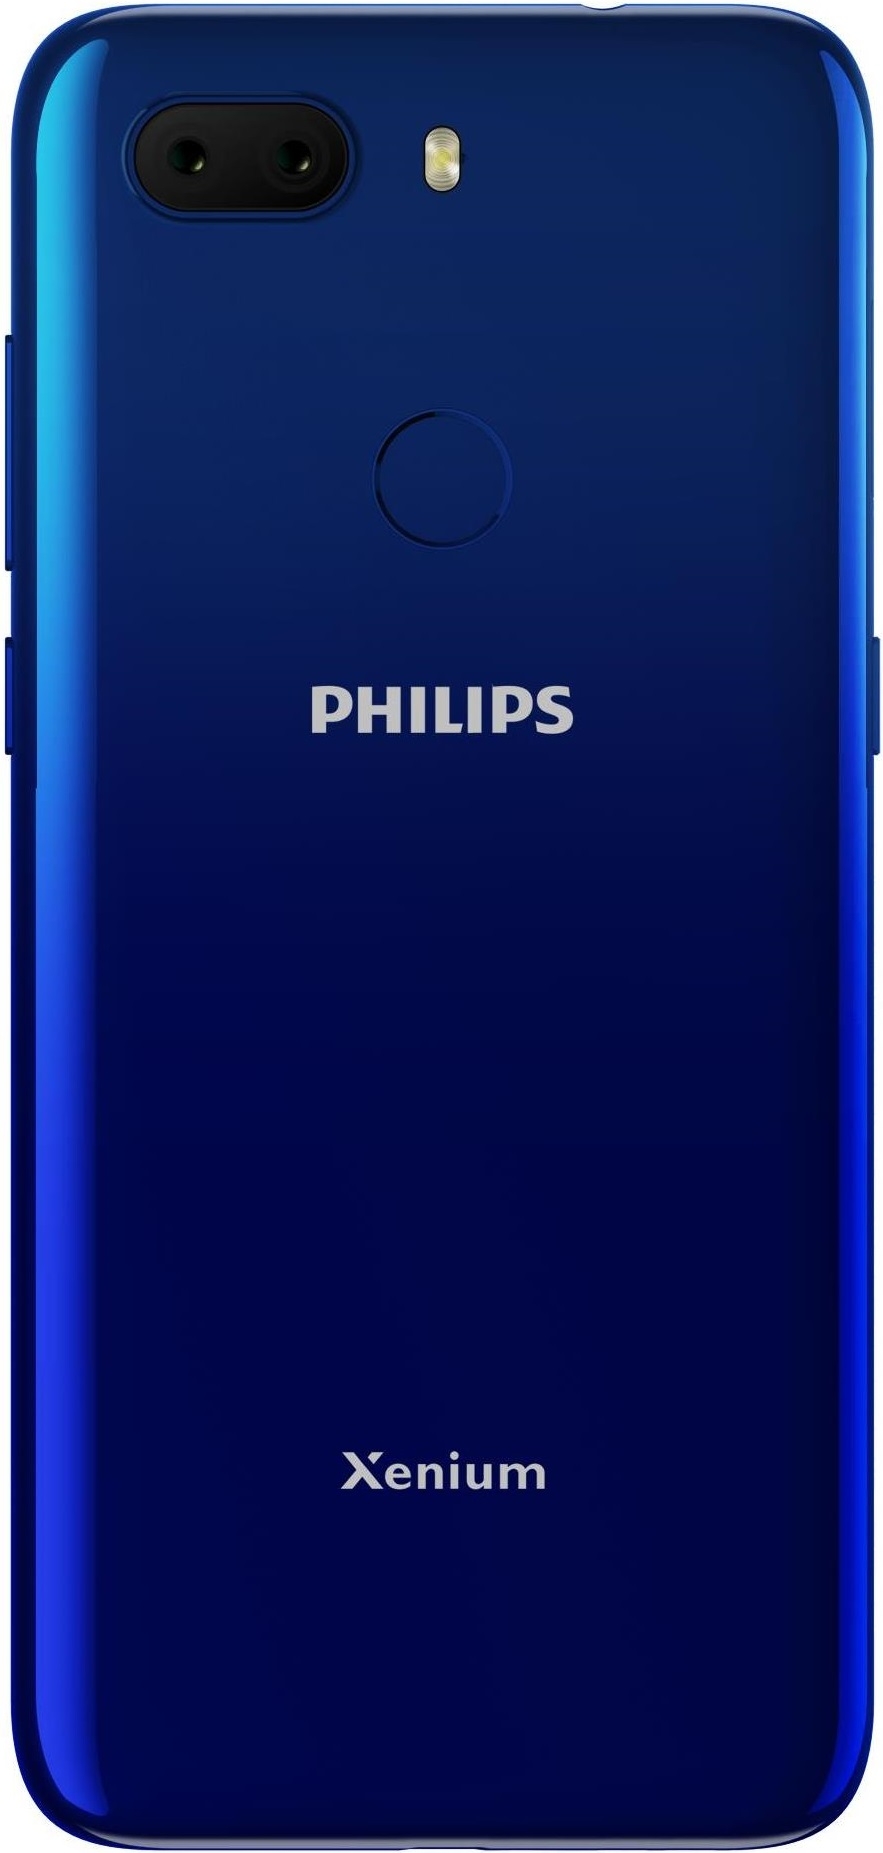 Philips Xenium S566